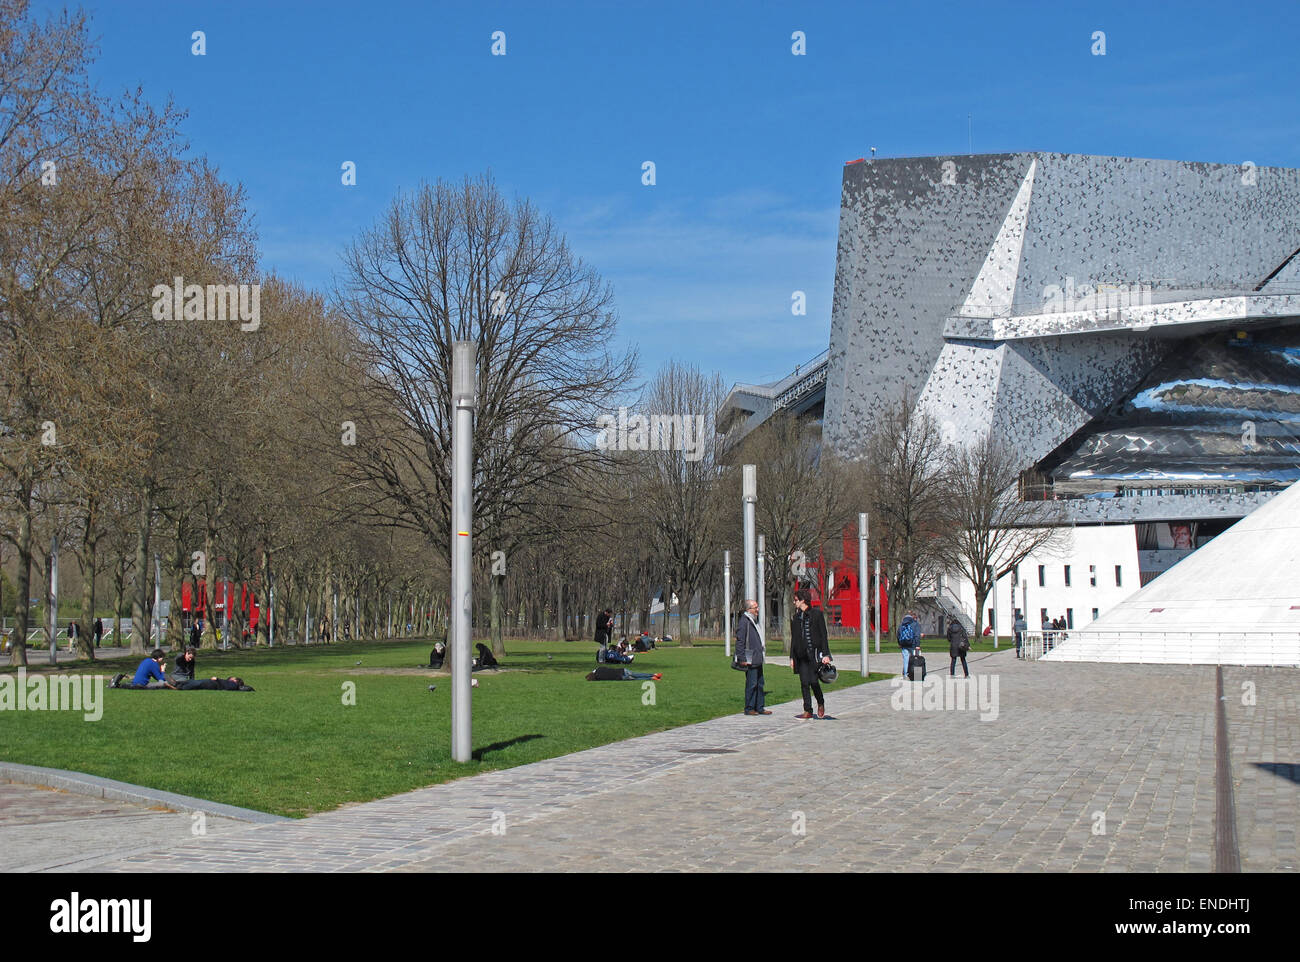 Cité de la musique,musique,ville Philharmonie de Paris,France,Jean Nouvel architecte parc de la Villette park Banque D'Images